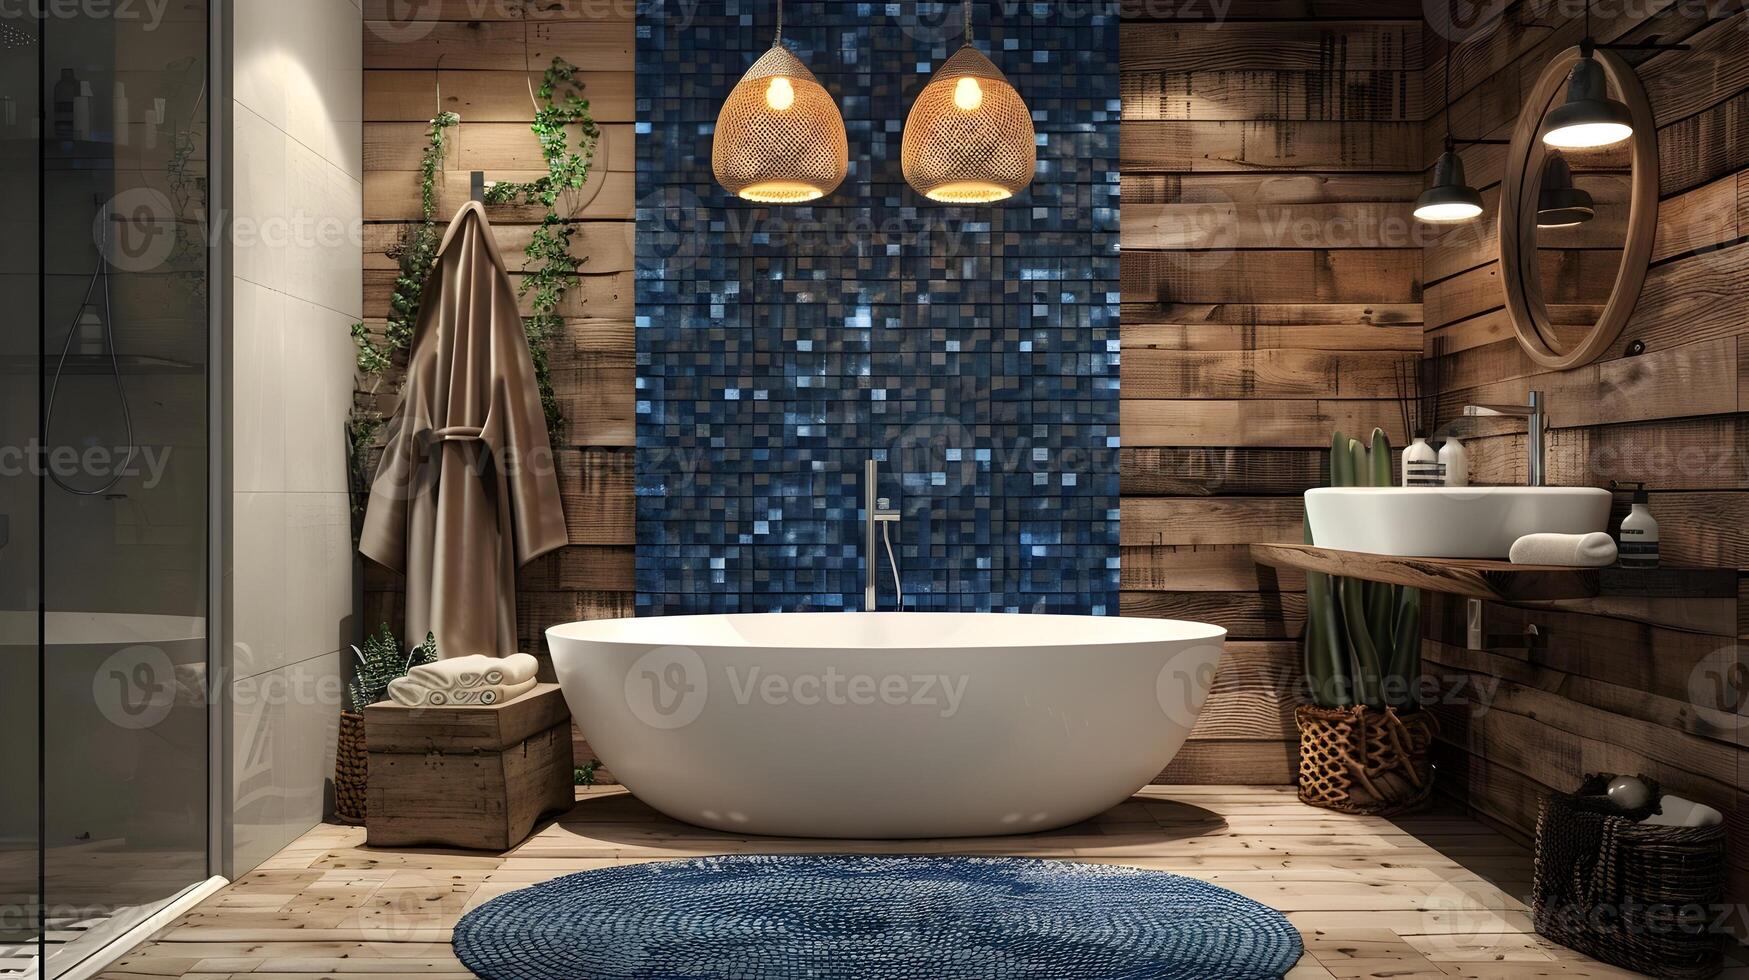 acolhedor rústico banheiro com azul mosaico azulejos e moderno talento convida sereno relaxamento foto